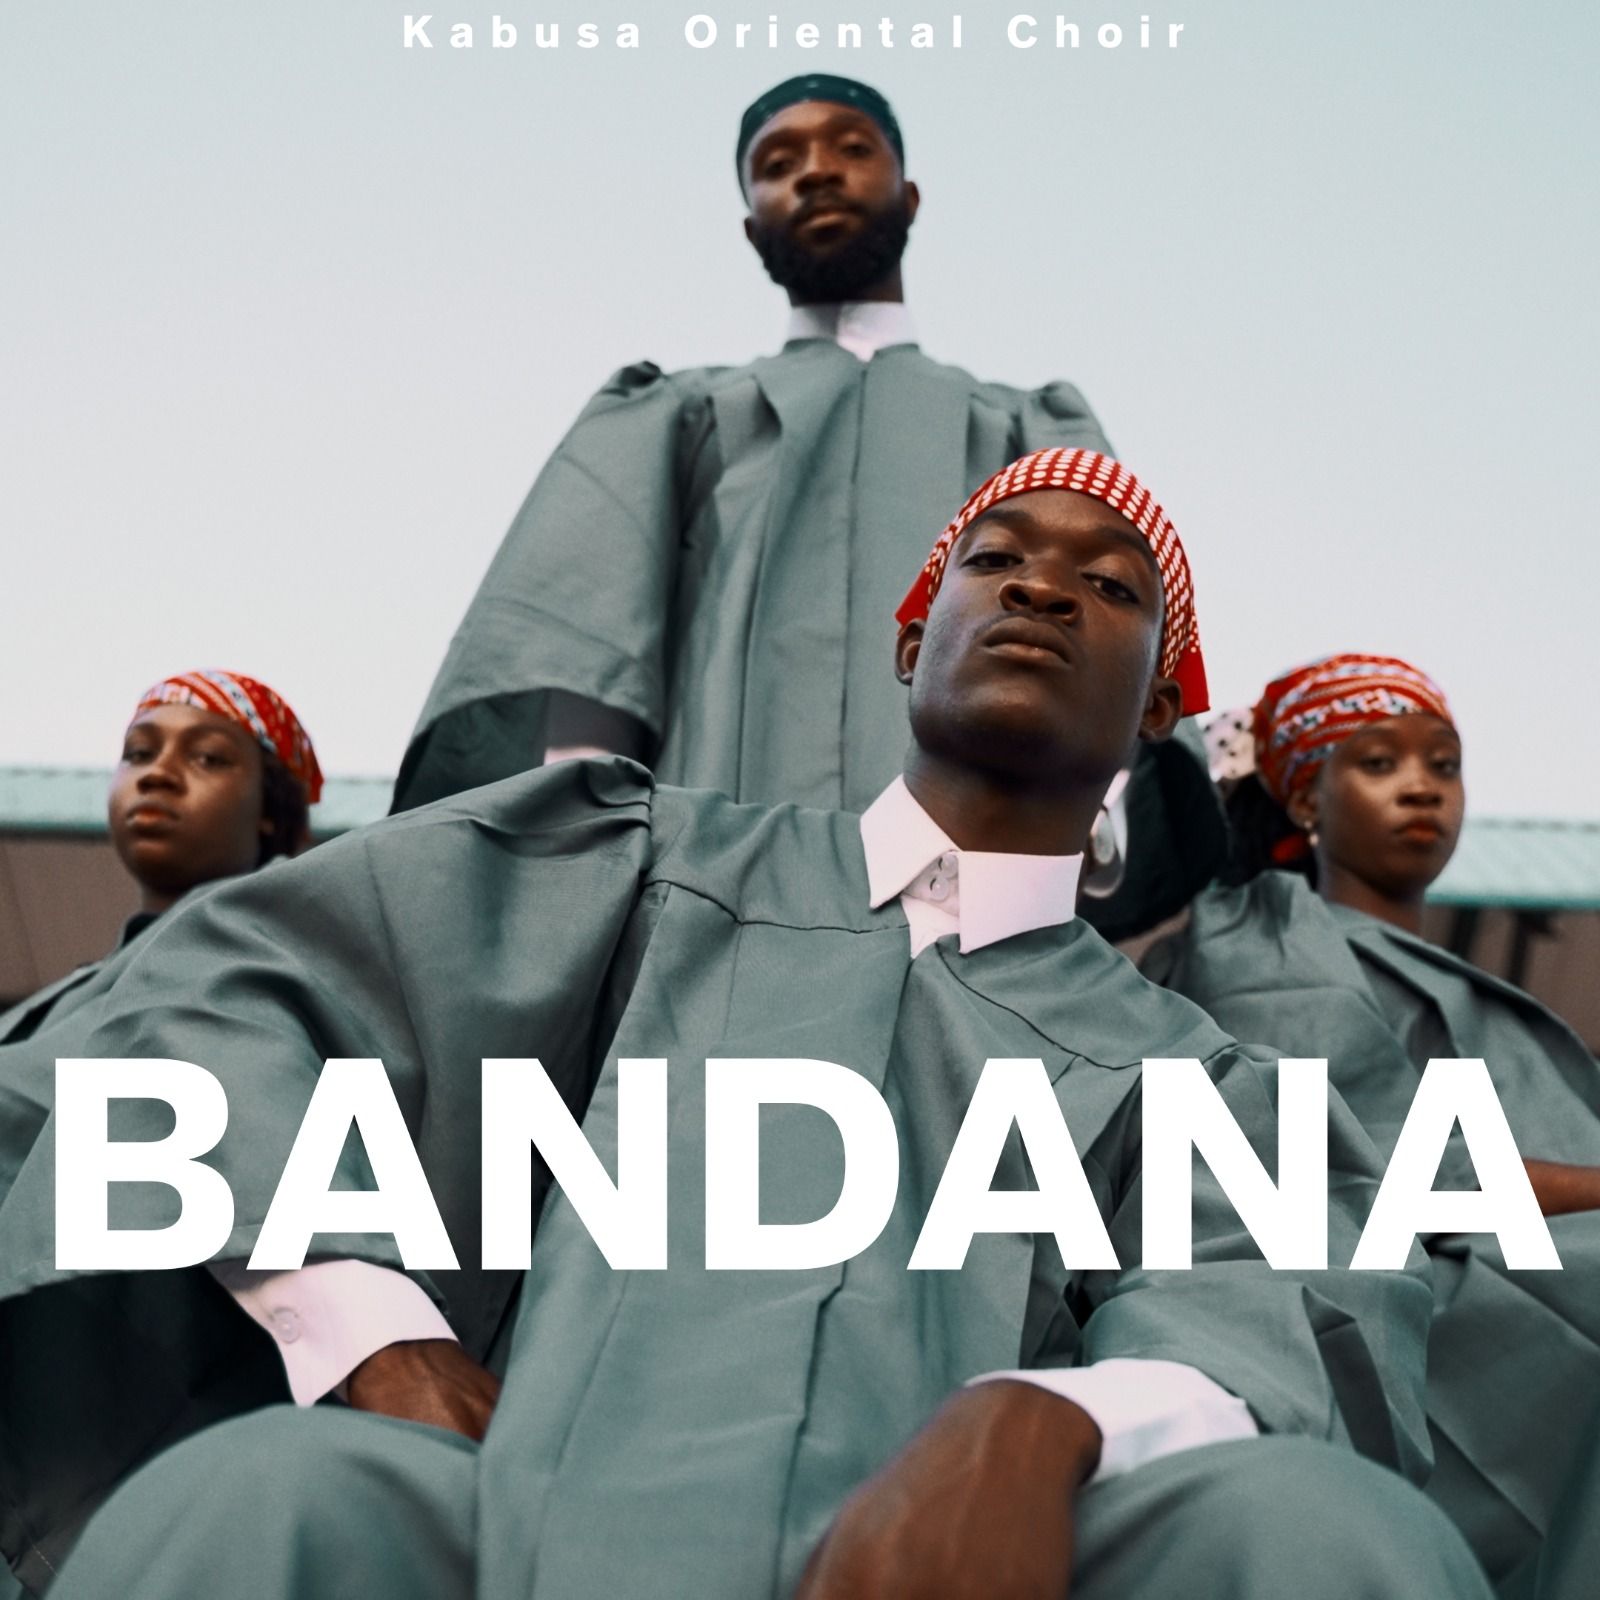 Kabusa Oriental Choir — Bandana Choir Version